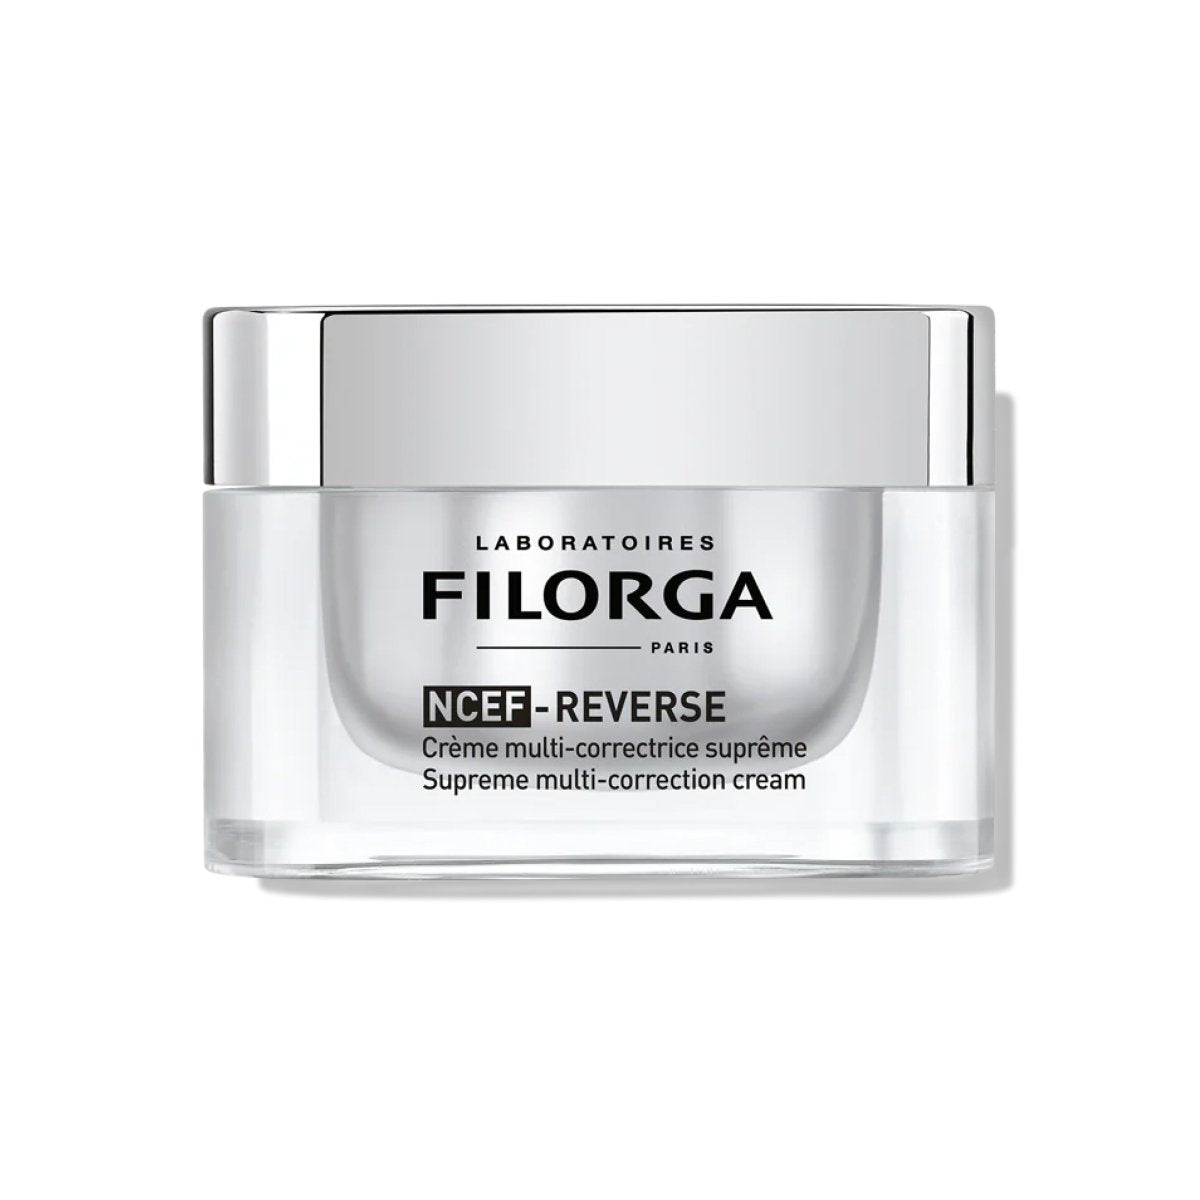 Filorga-NCEF-REVERSE (Cream) 50ml - SkincareEssentials